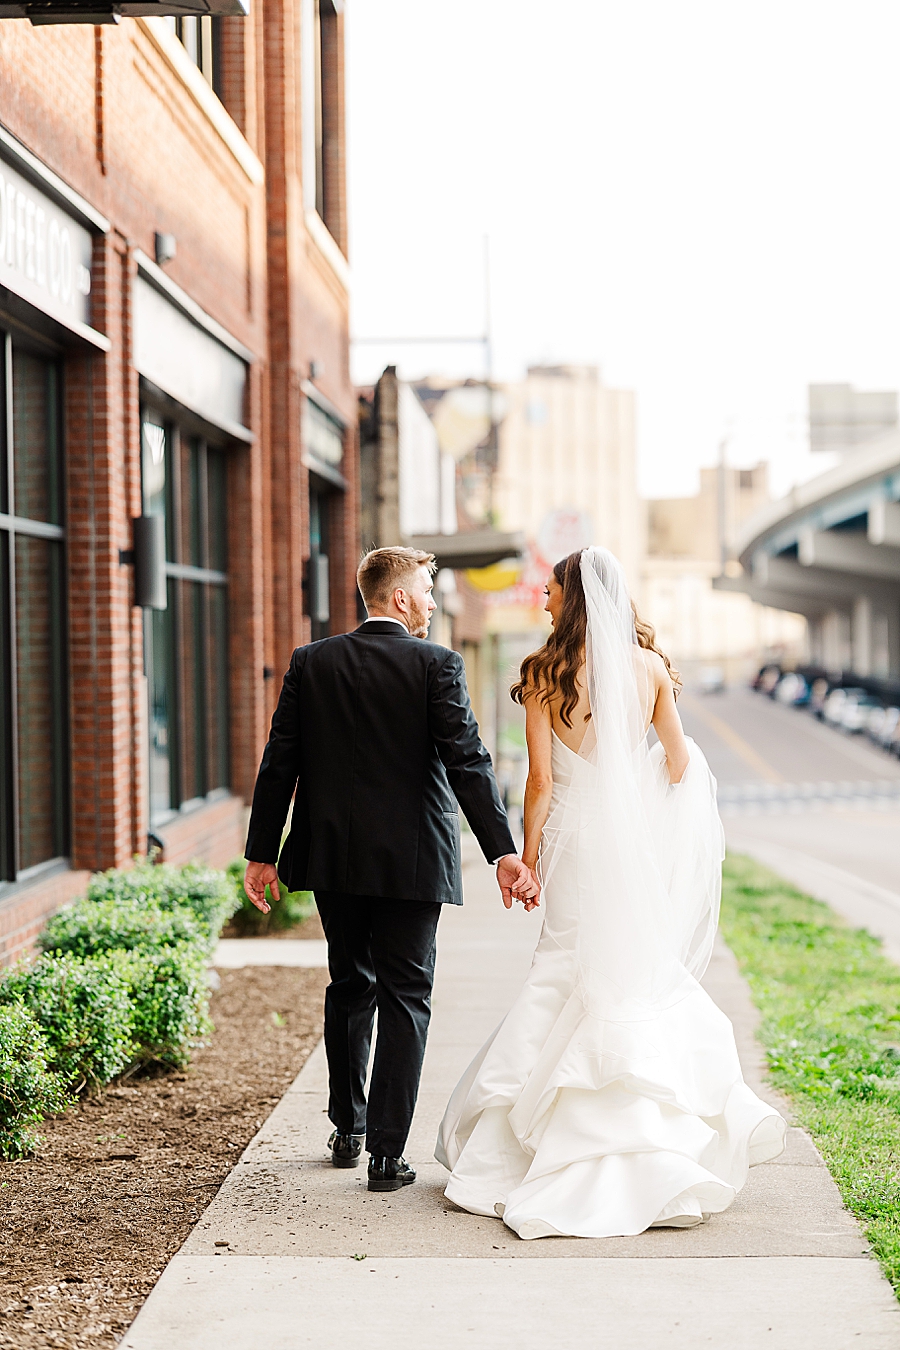 Walking along the path at Wedding by Amanda May Photos